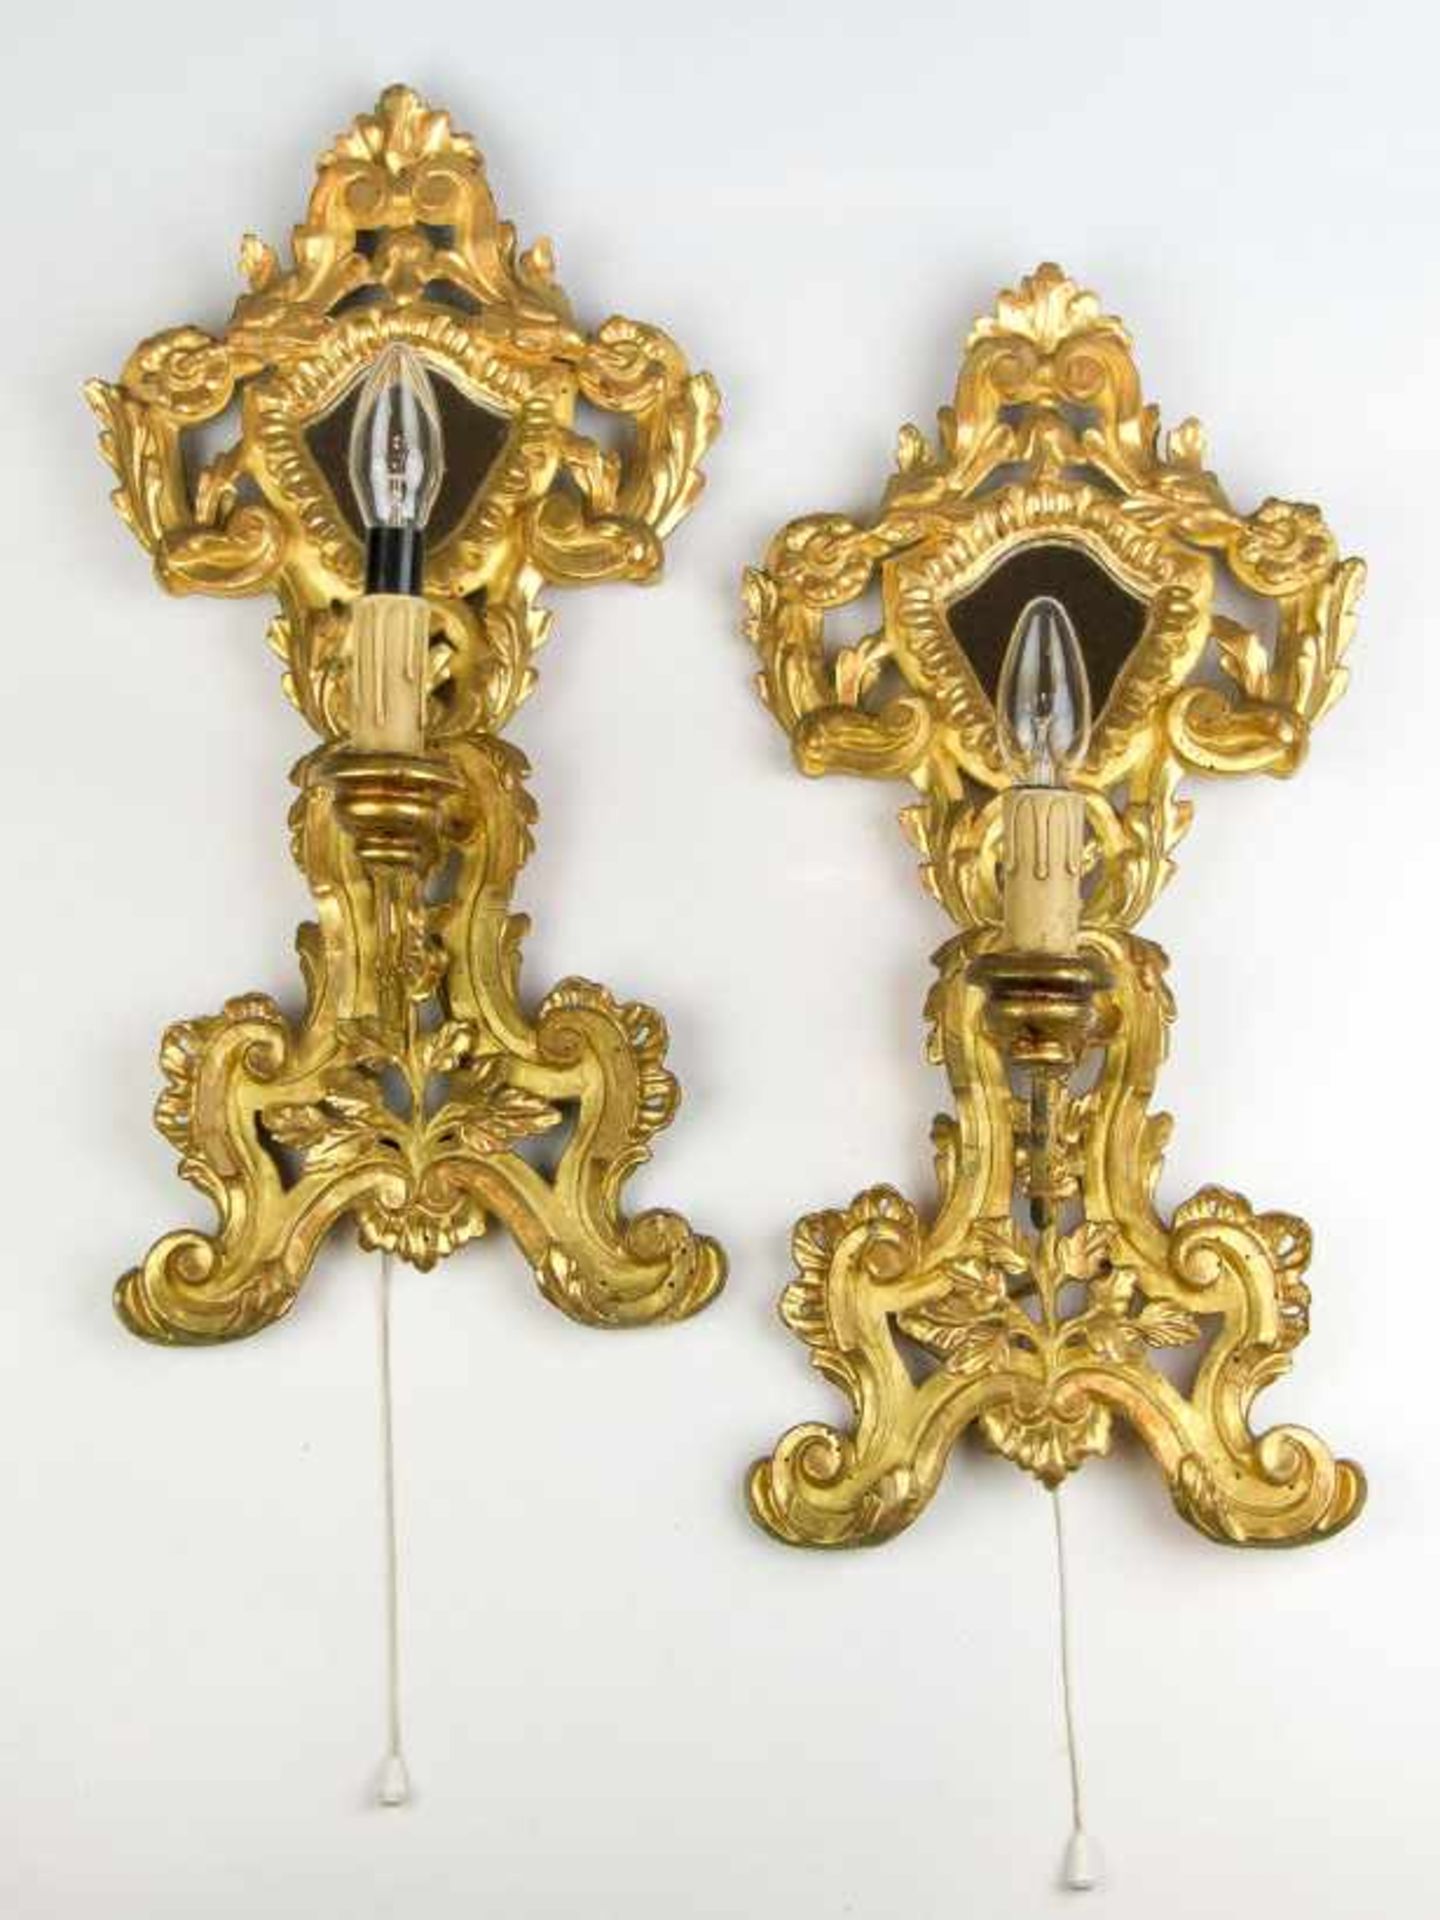 Ein Paar Spiegelappliken in ReliquiarformRokokostil. Holz, geschnitzt, vergoldet. Einflammig.